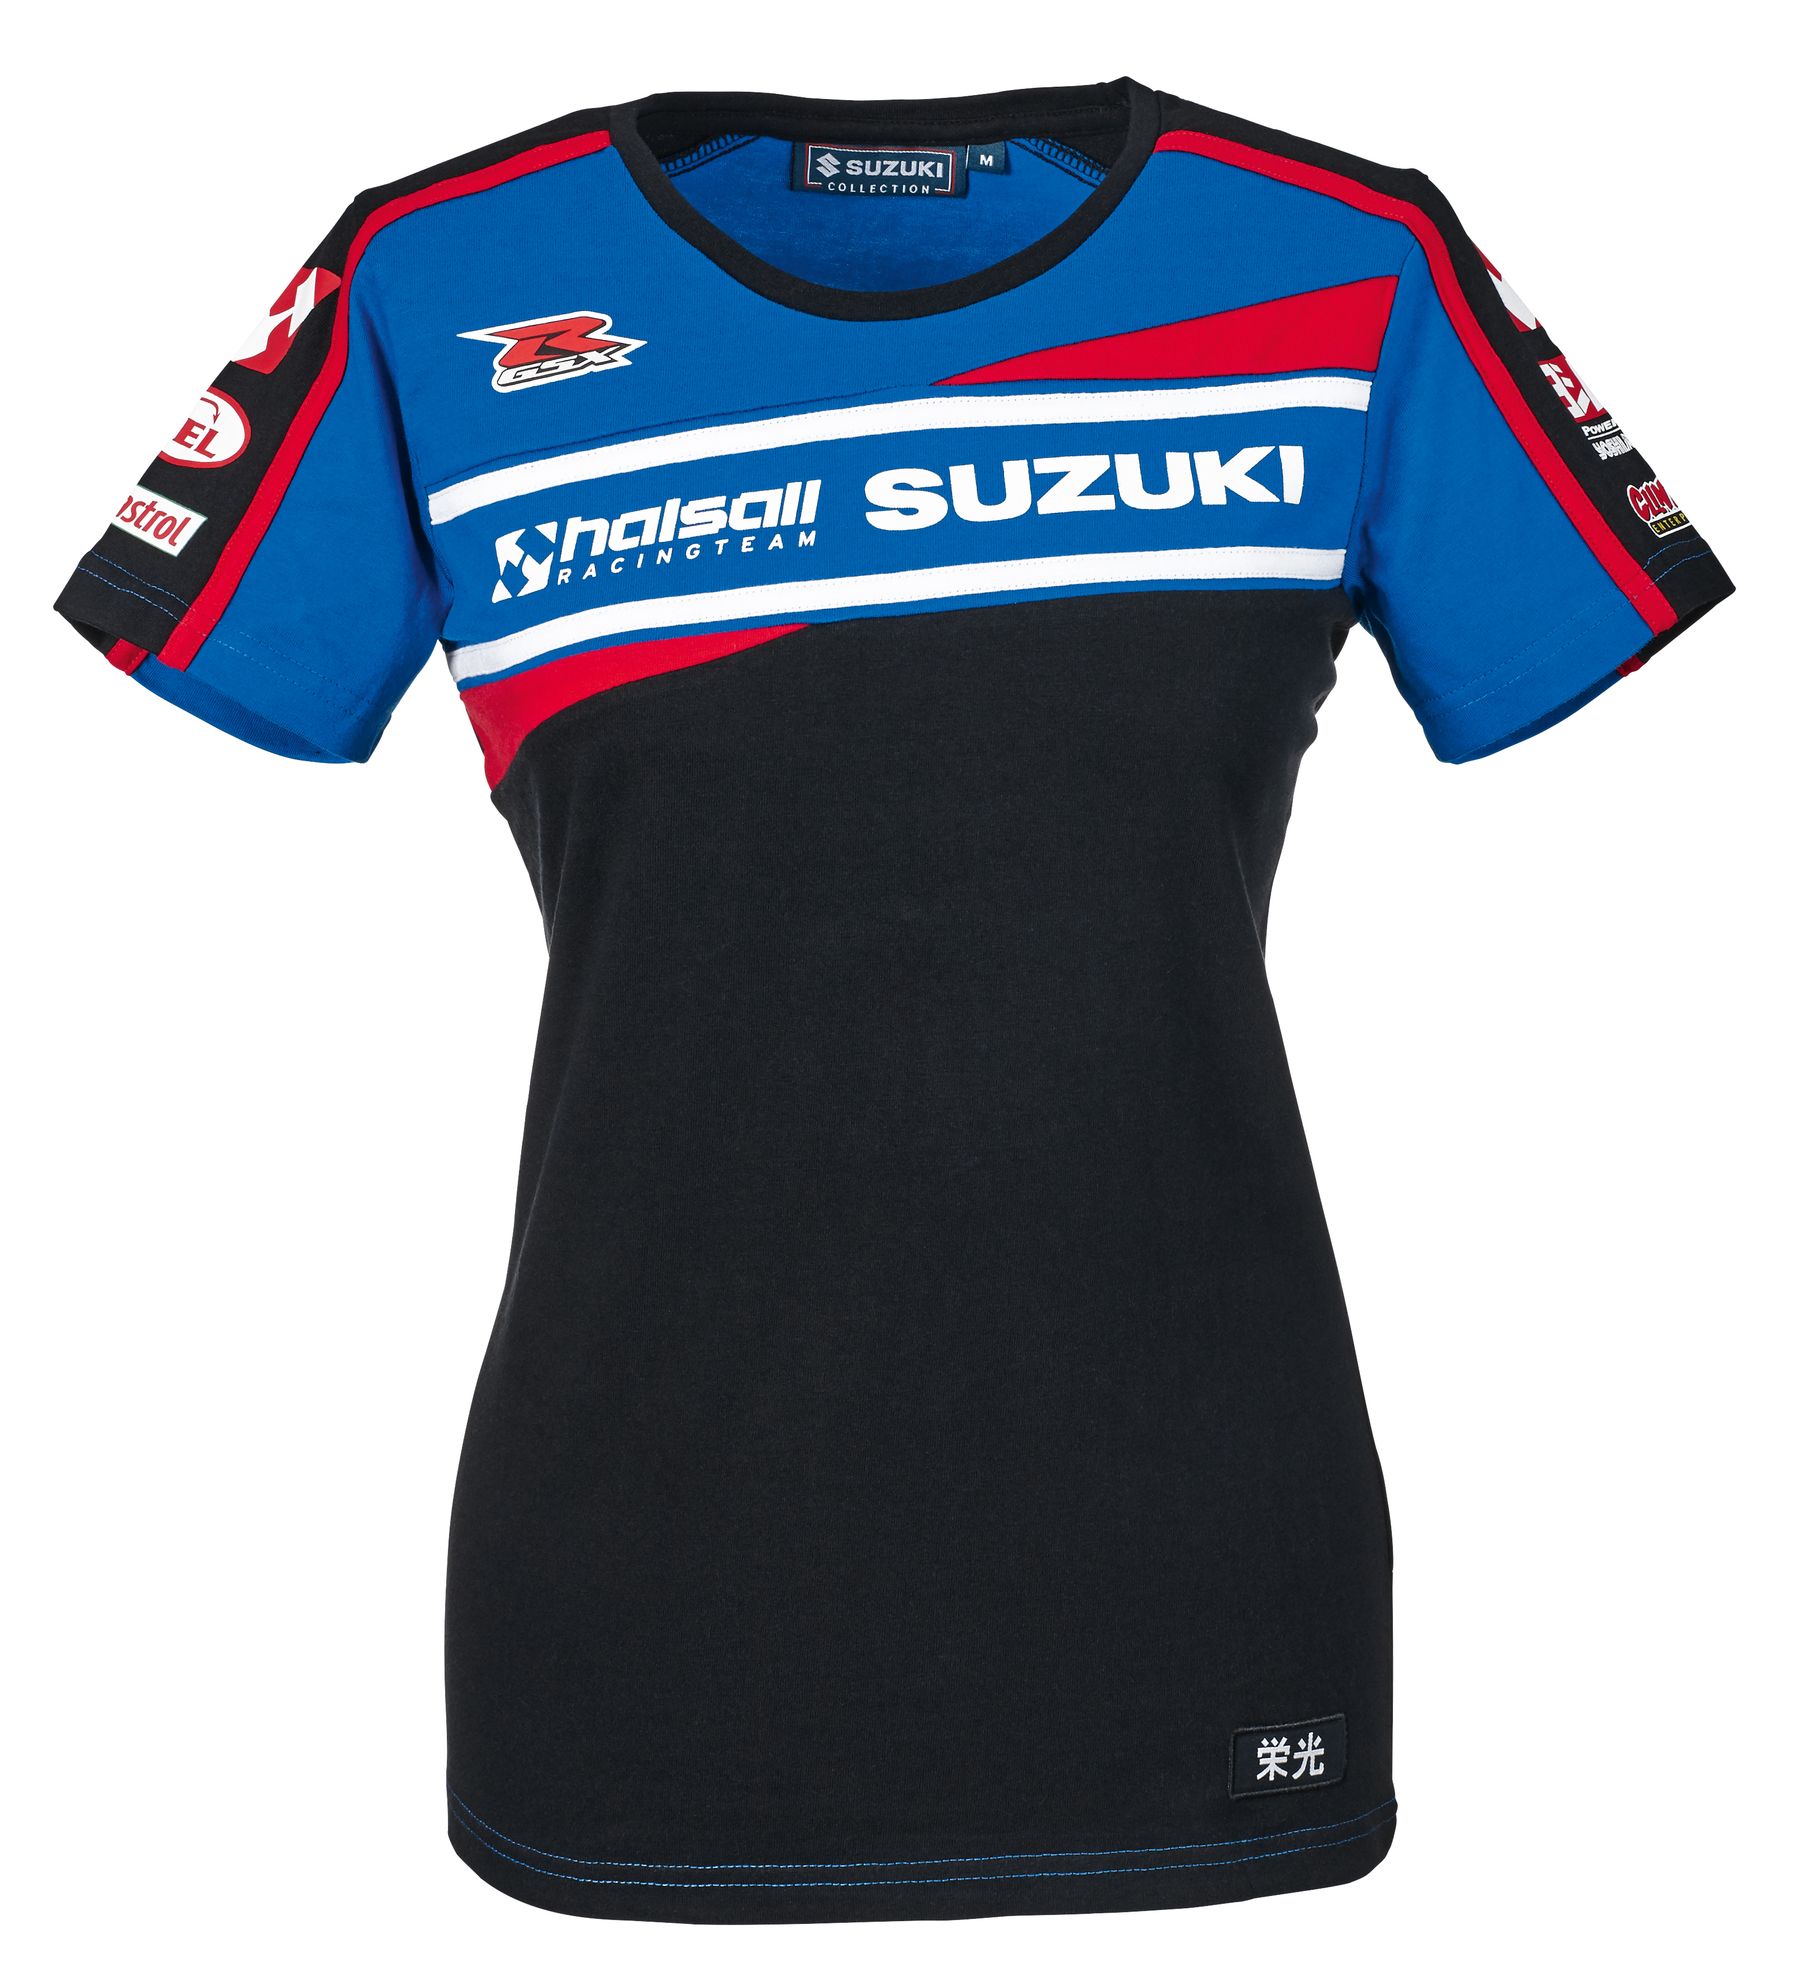 Suzuki Motorsport Collection 2015 